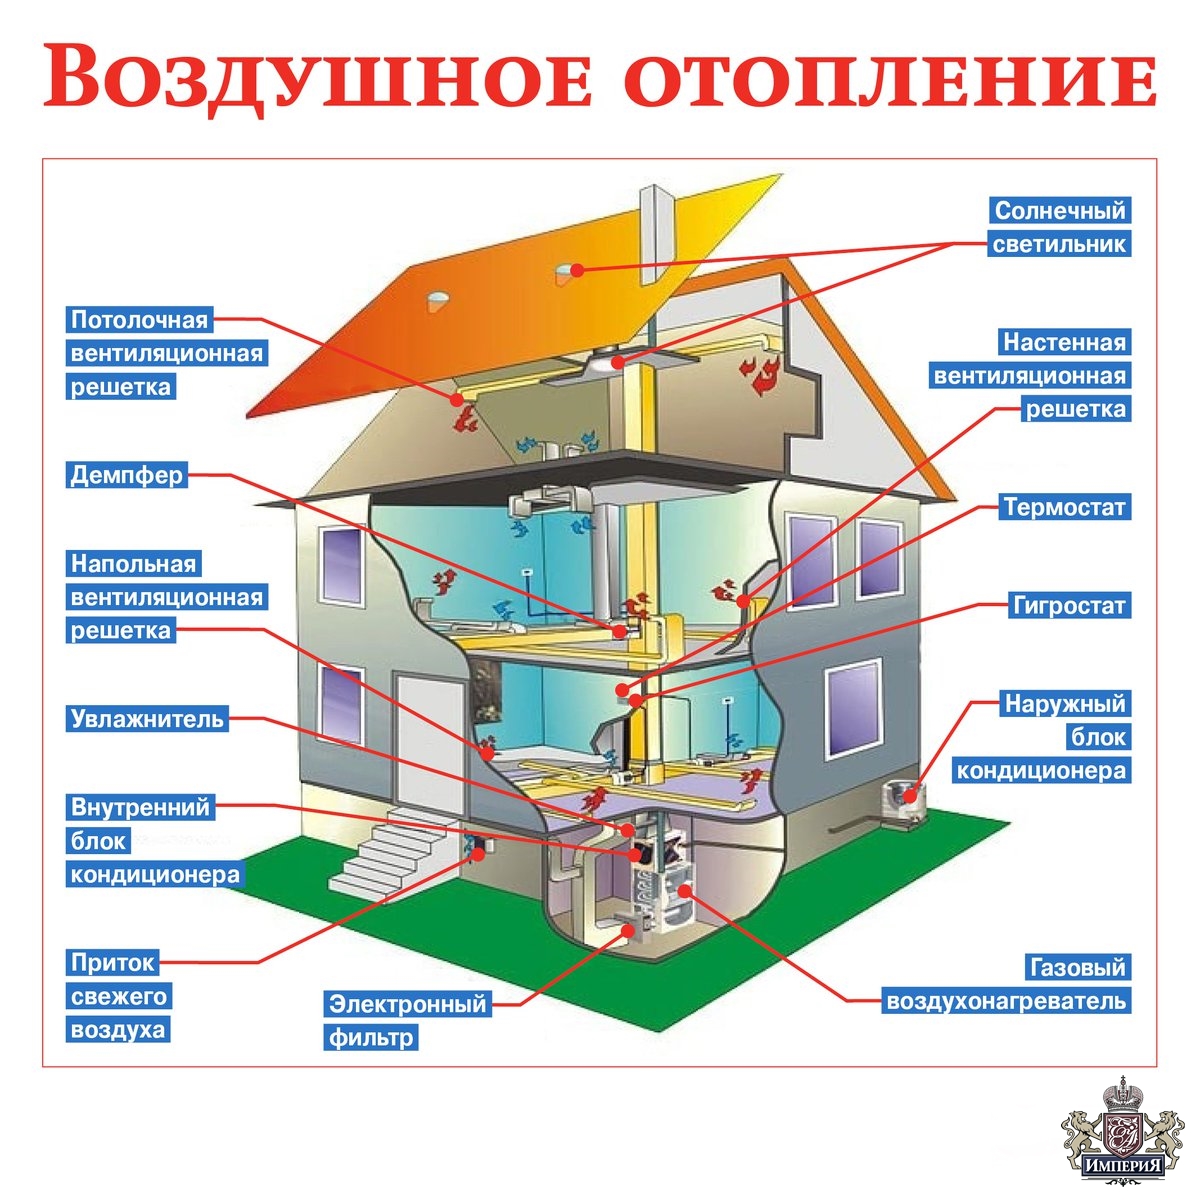 Воздушное отопление дома. Особенности и схемы отопления воздухом